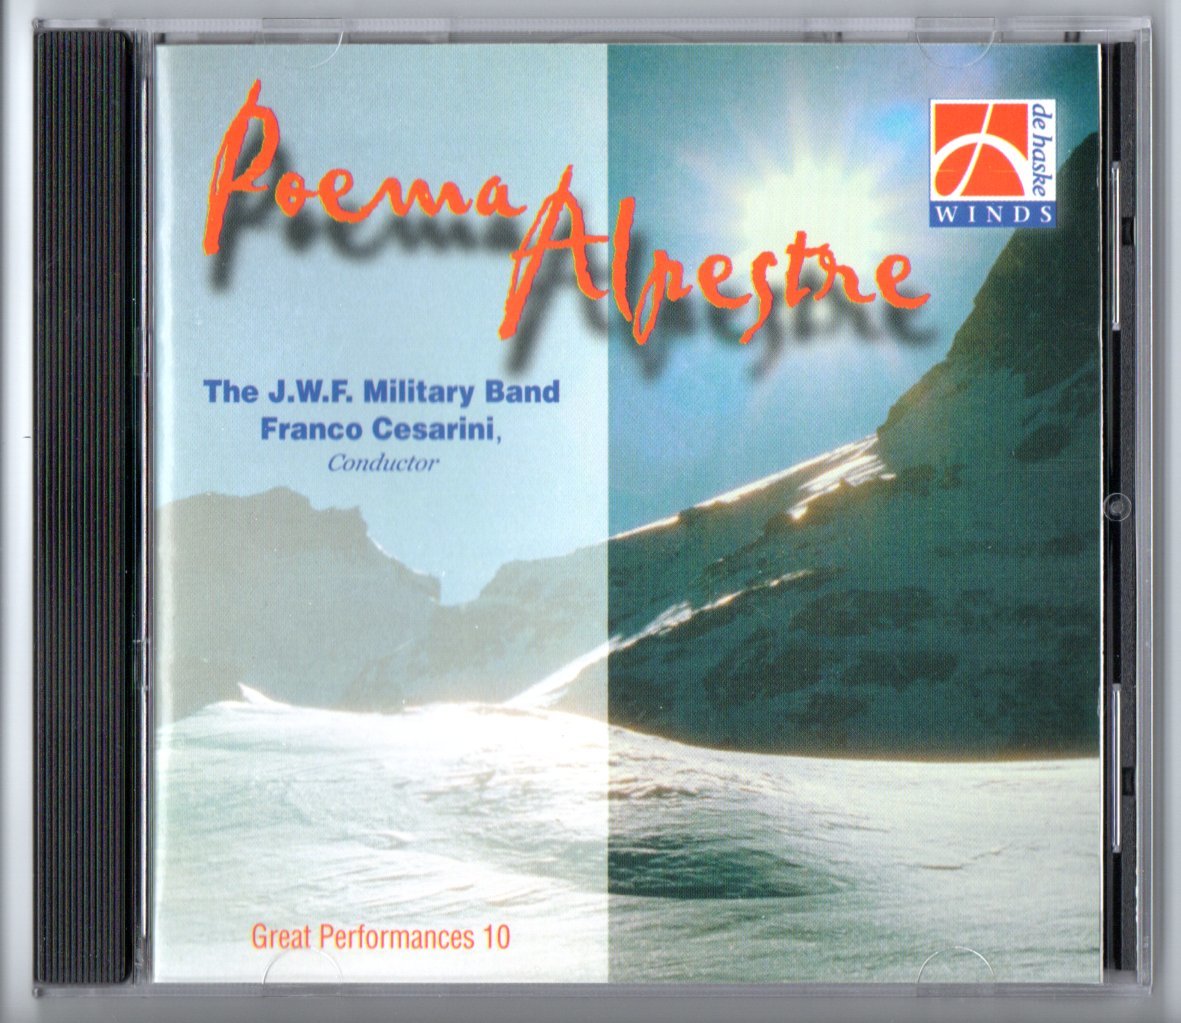 送料無料 吹奏楽CD フランコ・チェザリーニ作品集:交響詩「アルプスの詩」 リュートのための古風な舞曲とアリア リヴァイアサン アロルド_画像1